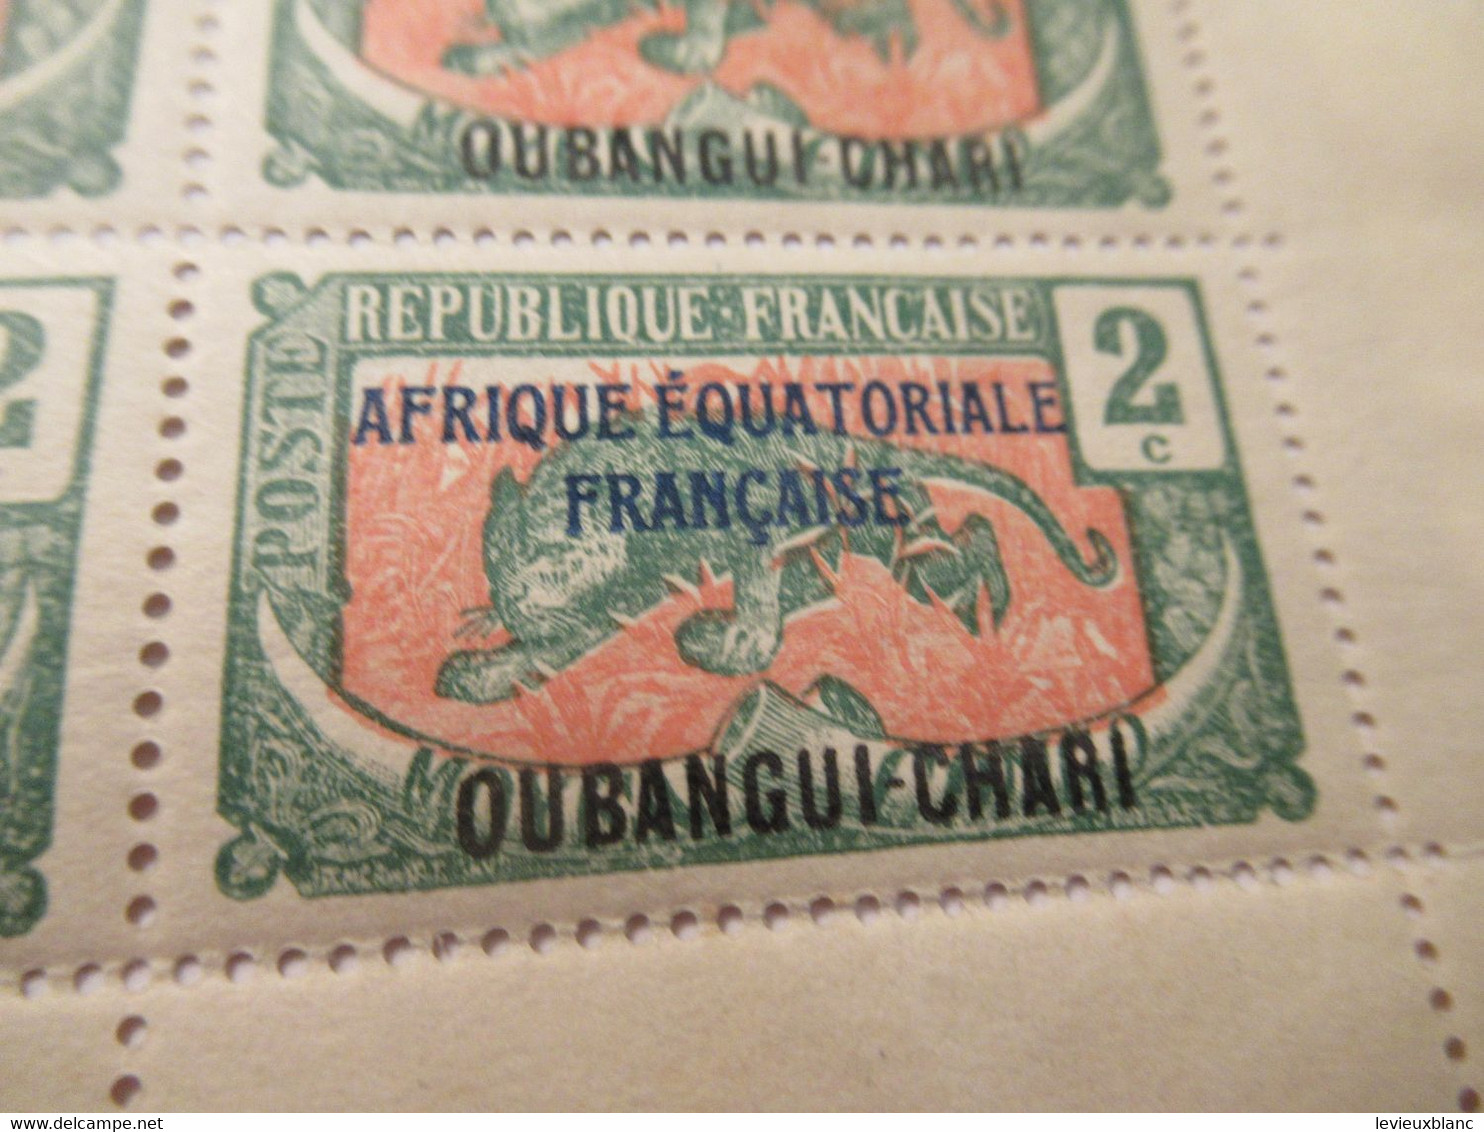 Plaque Complète De 25 Timbres 2C Anciens/Moyen Congo 1907 Surchargés AEF/Oubangui Chari1/Panthère/1924-25     TIMB155 - Altri - Africa